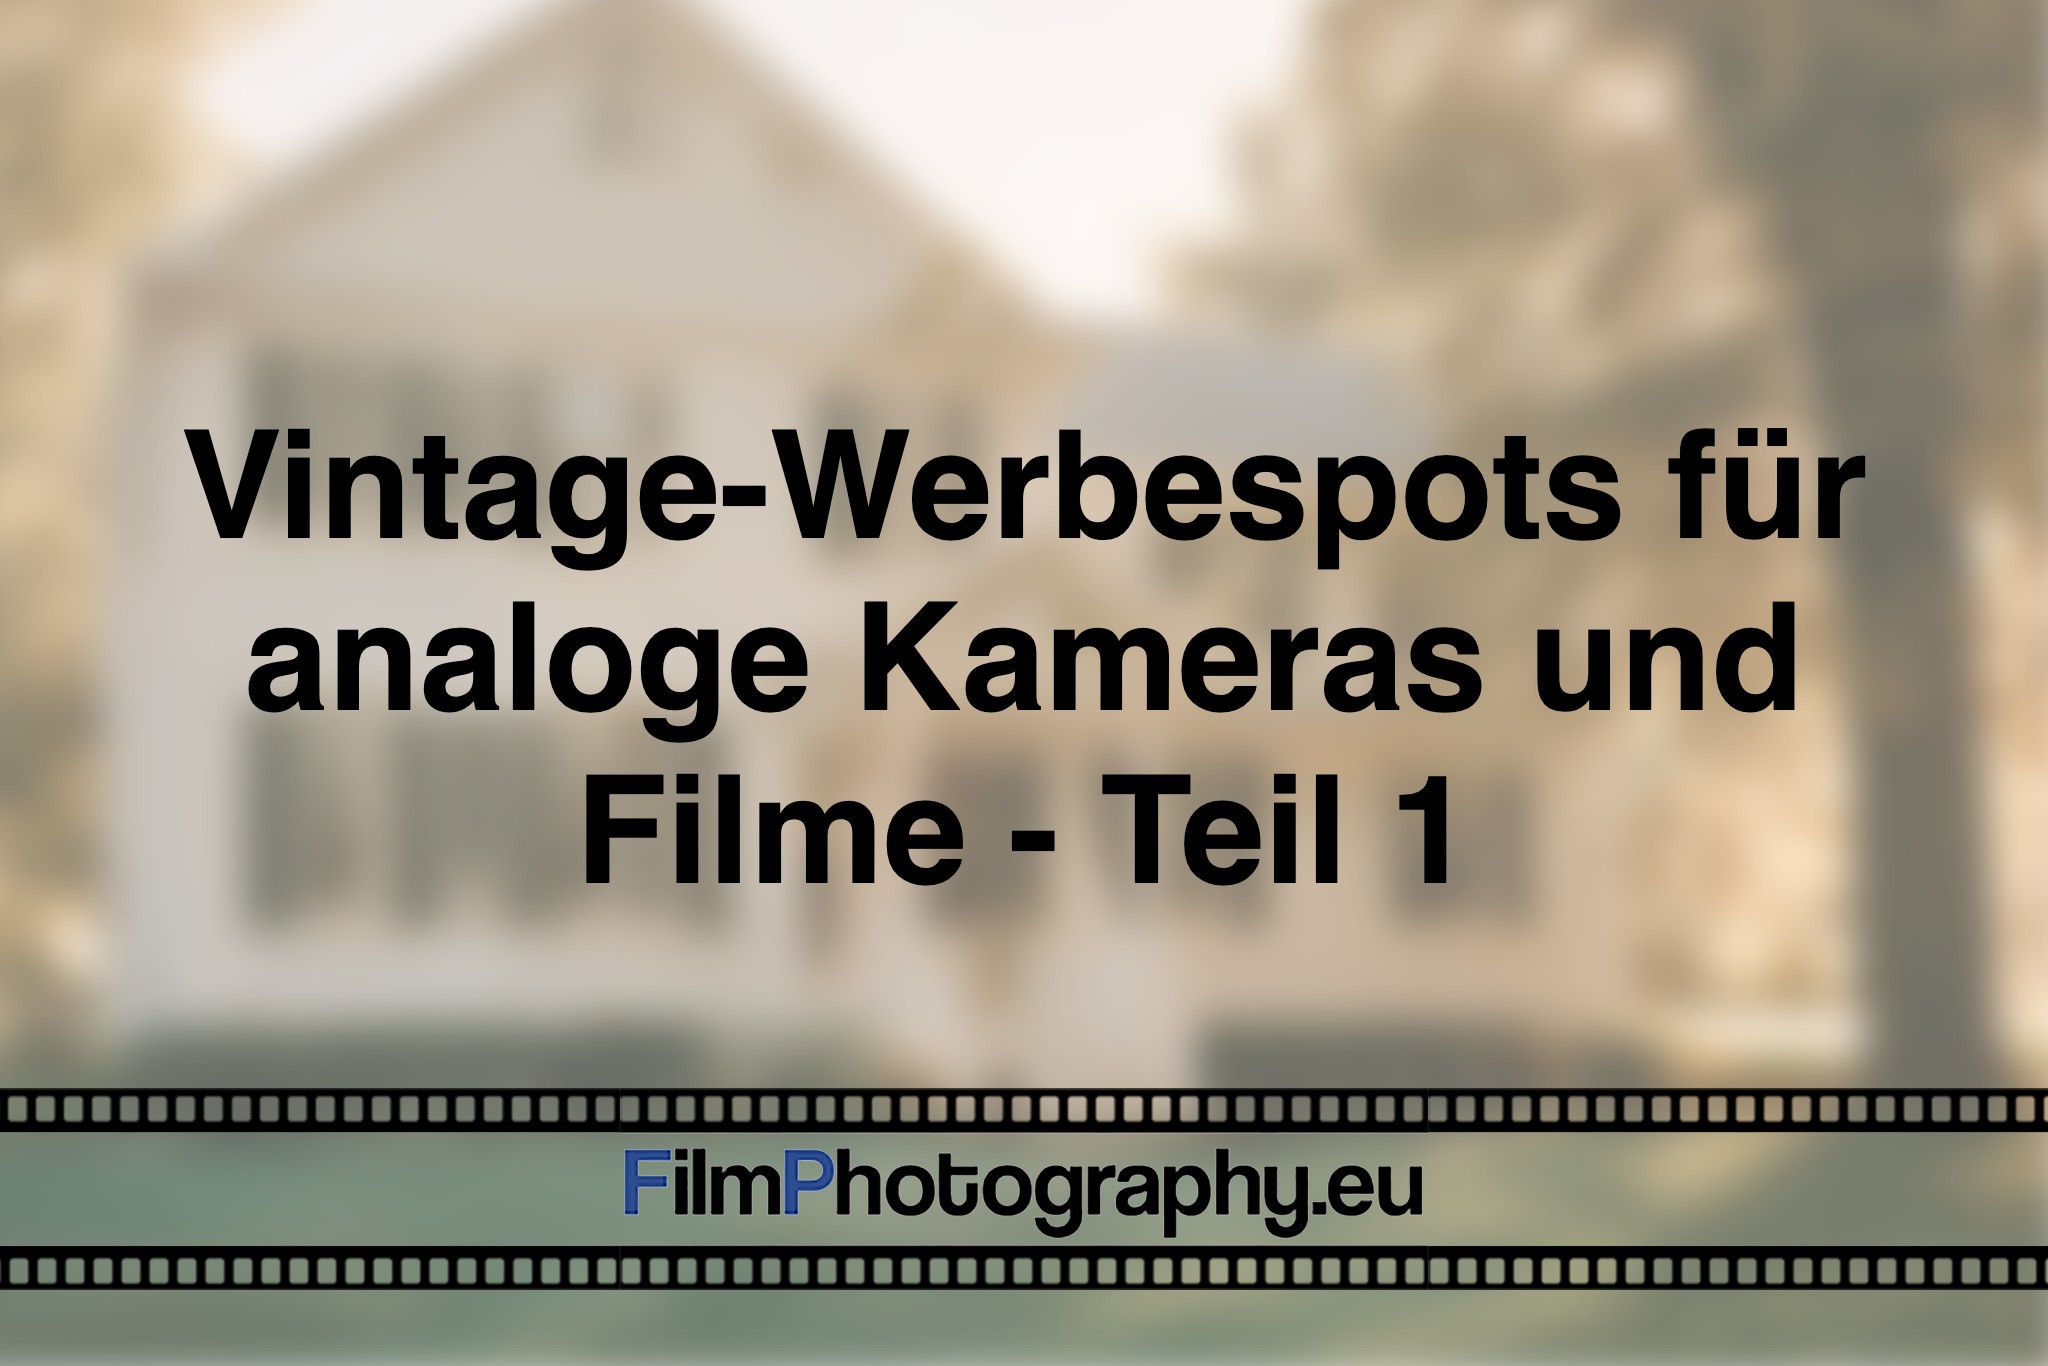 vintage-werbespots-fuer-analoge-kameras-und-filme-teil-1-photo-bnv